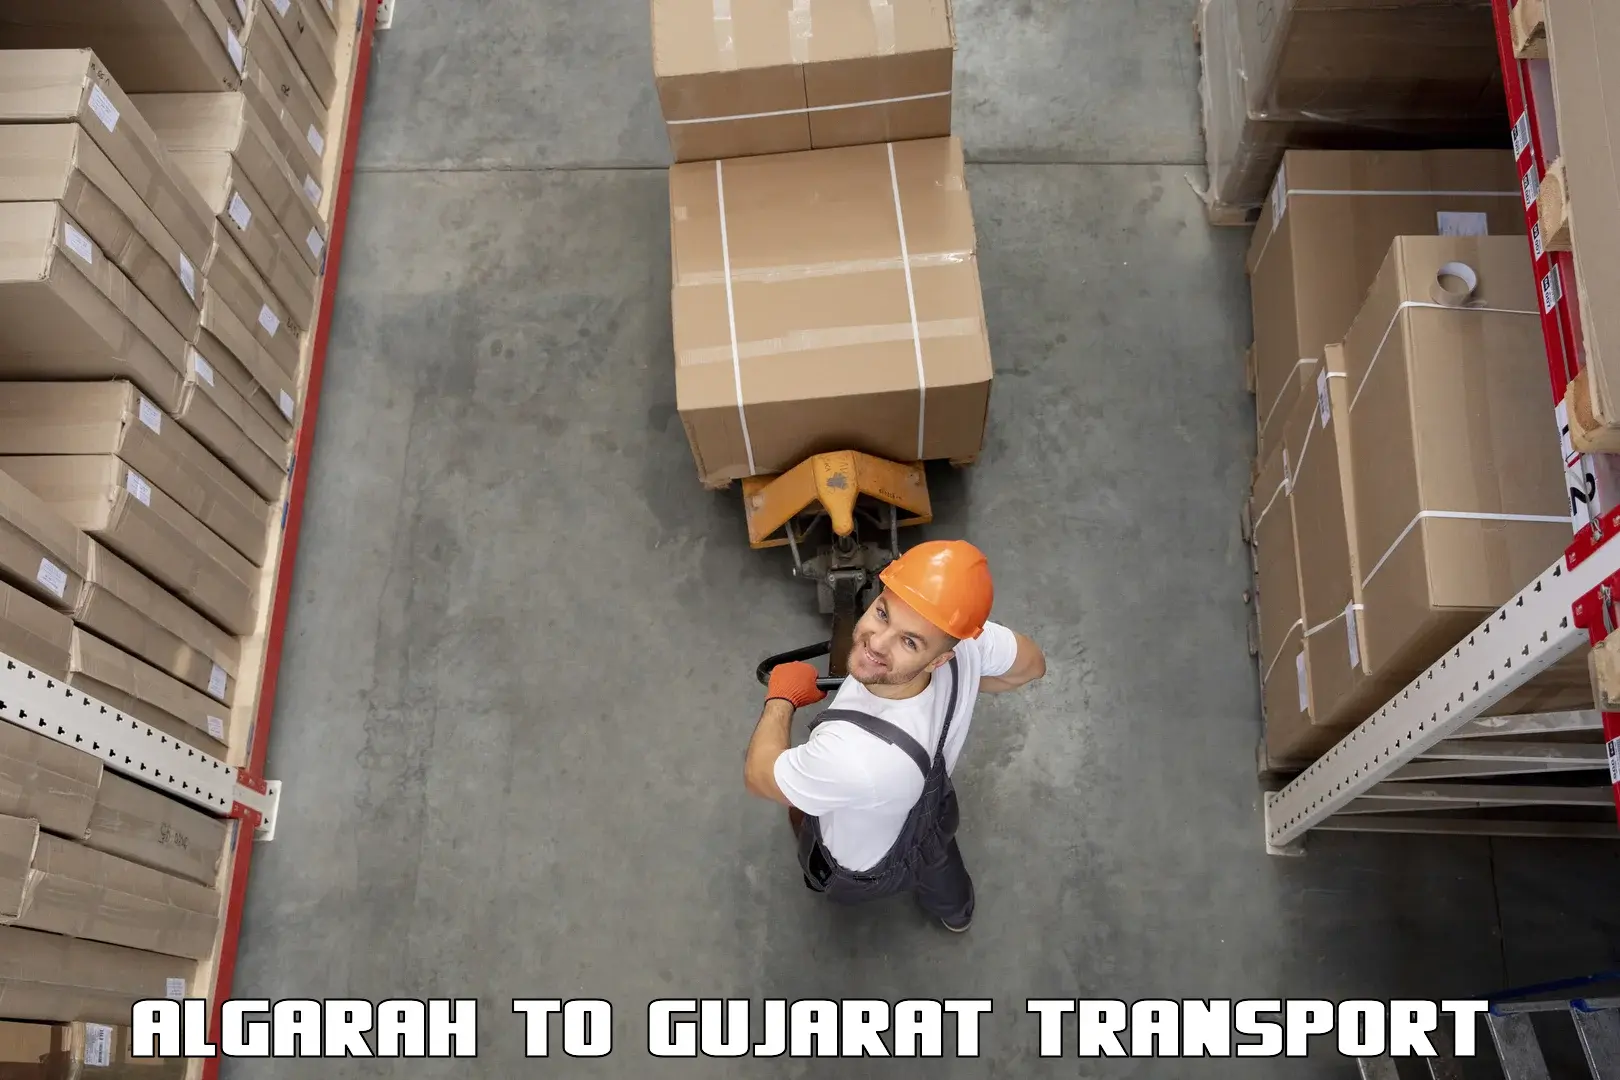 Road transport online services Algarah to IIIT Surat